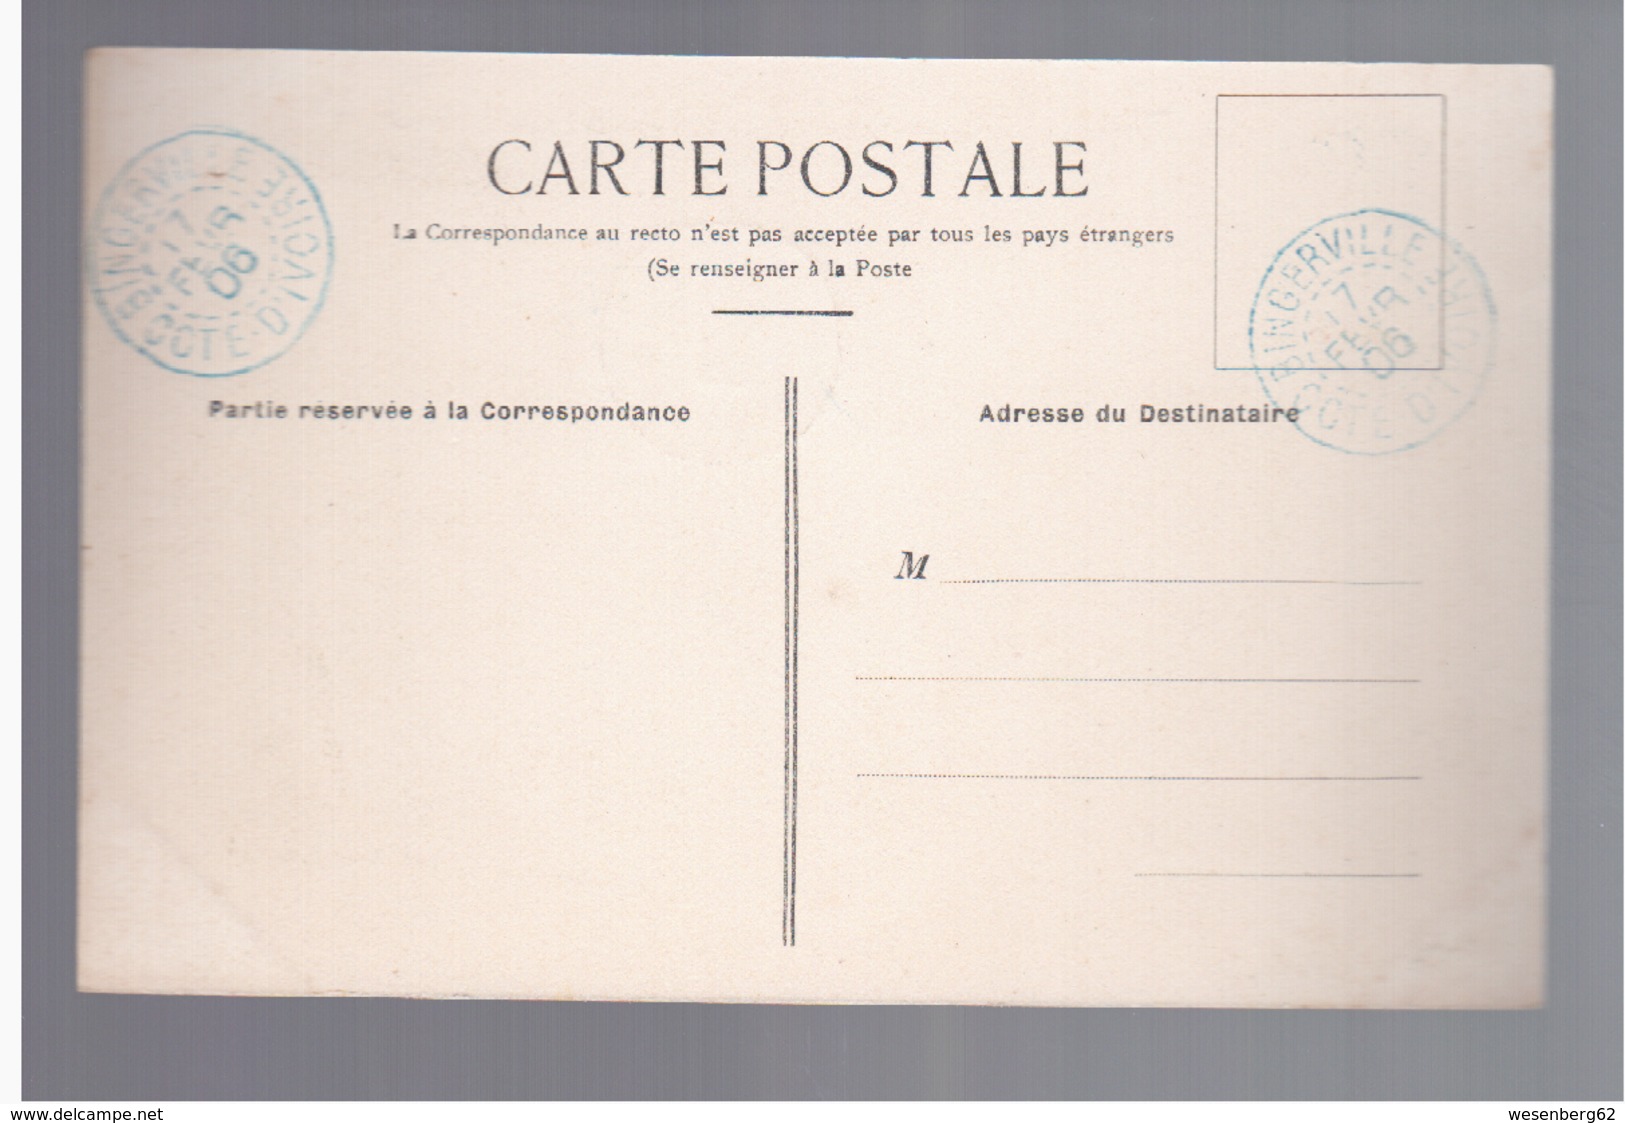 Cote D'Ivoire  A Travers L'Indénié - Poste De Zaranou -   Résidence De L'Administrateur 1906 OLD POSTCARD - Côte-d'Ivoire